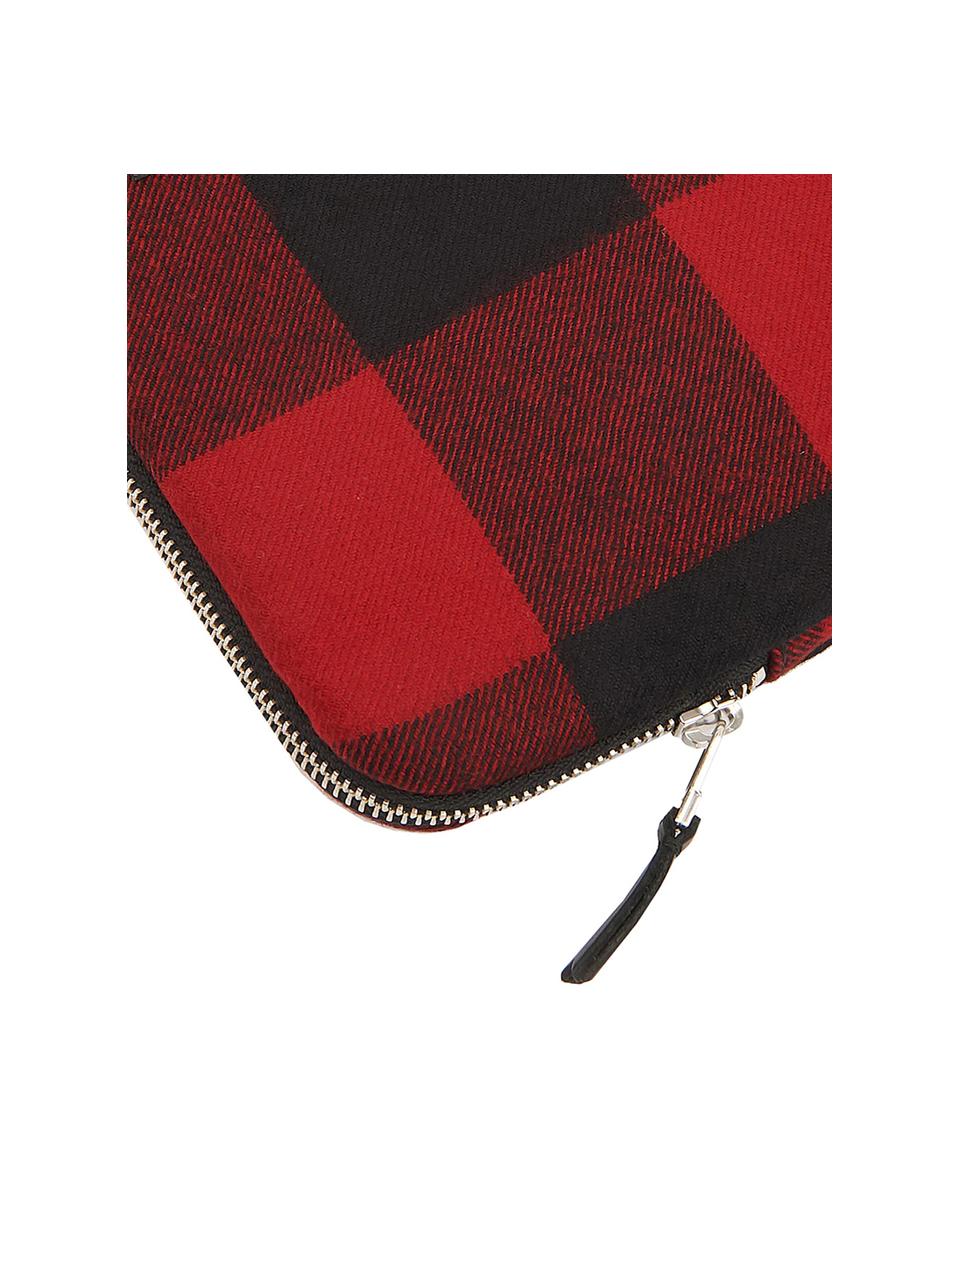 Laptophoes rood Jack voor Macbook per 13 inch, Katoen, leer, Rood, zwart, 33 x 23 cm